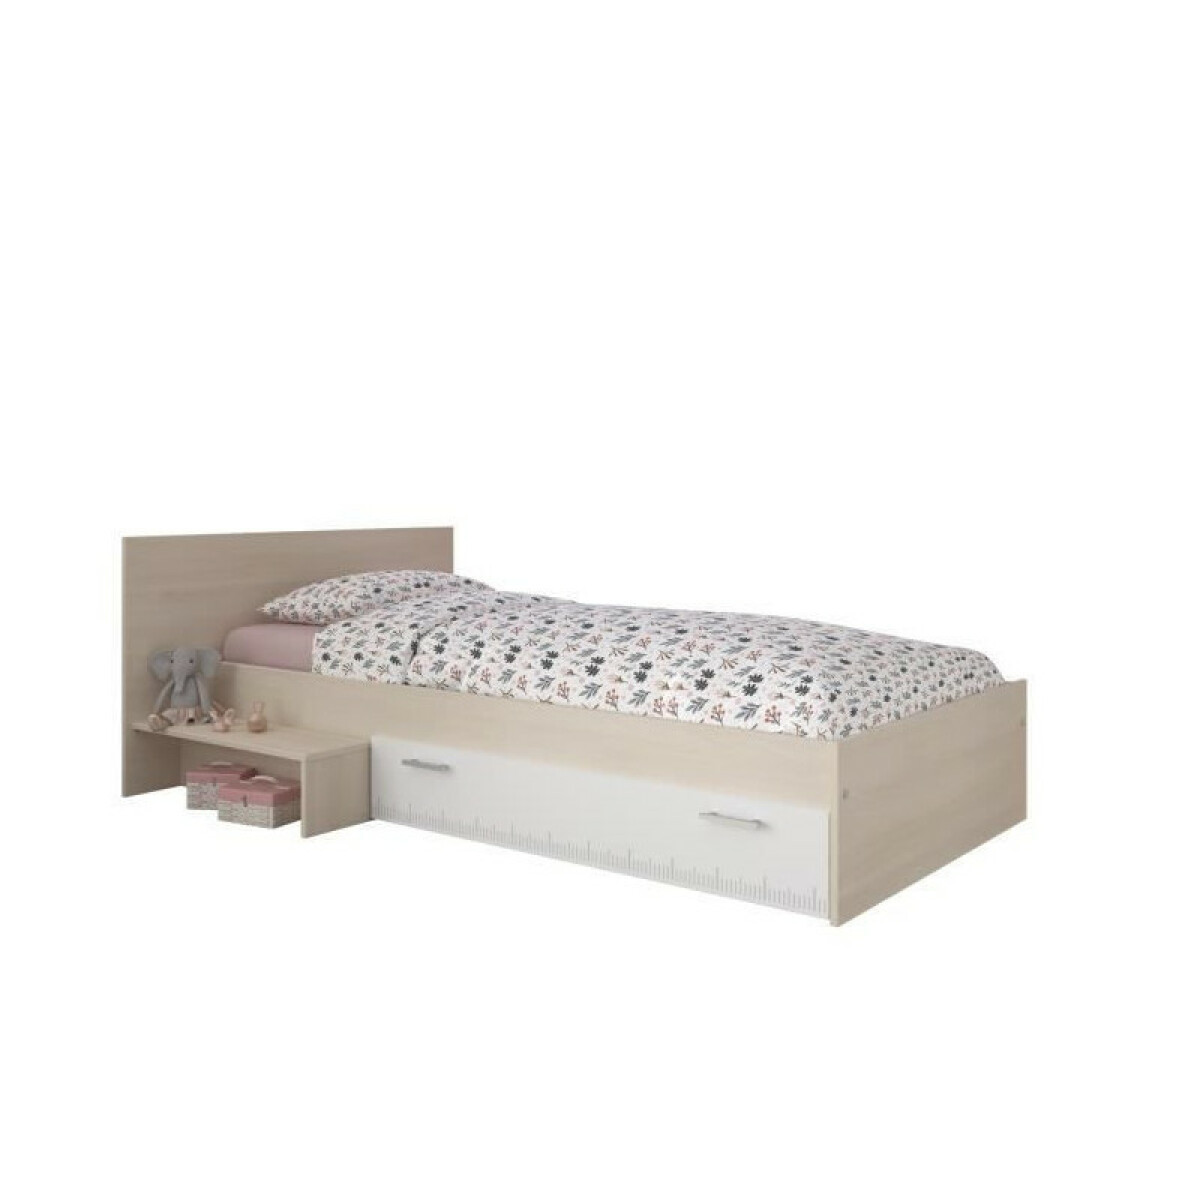 Cadres de lit PARISOT Lit enfant l 90 x L 190 cm - Decor acacia et blanc tiroir - Contemporain - CHARLEMAGNE